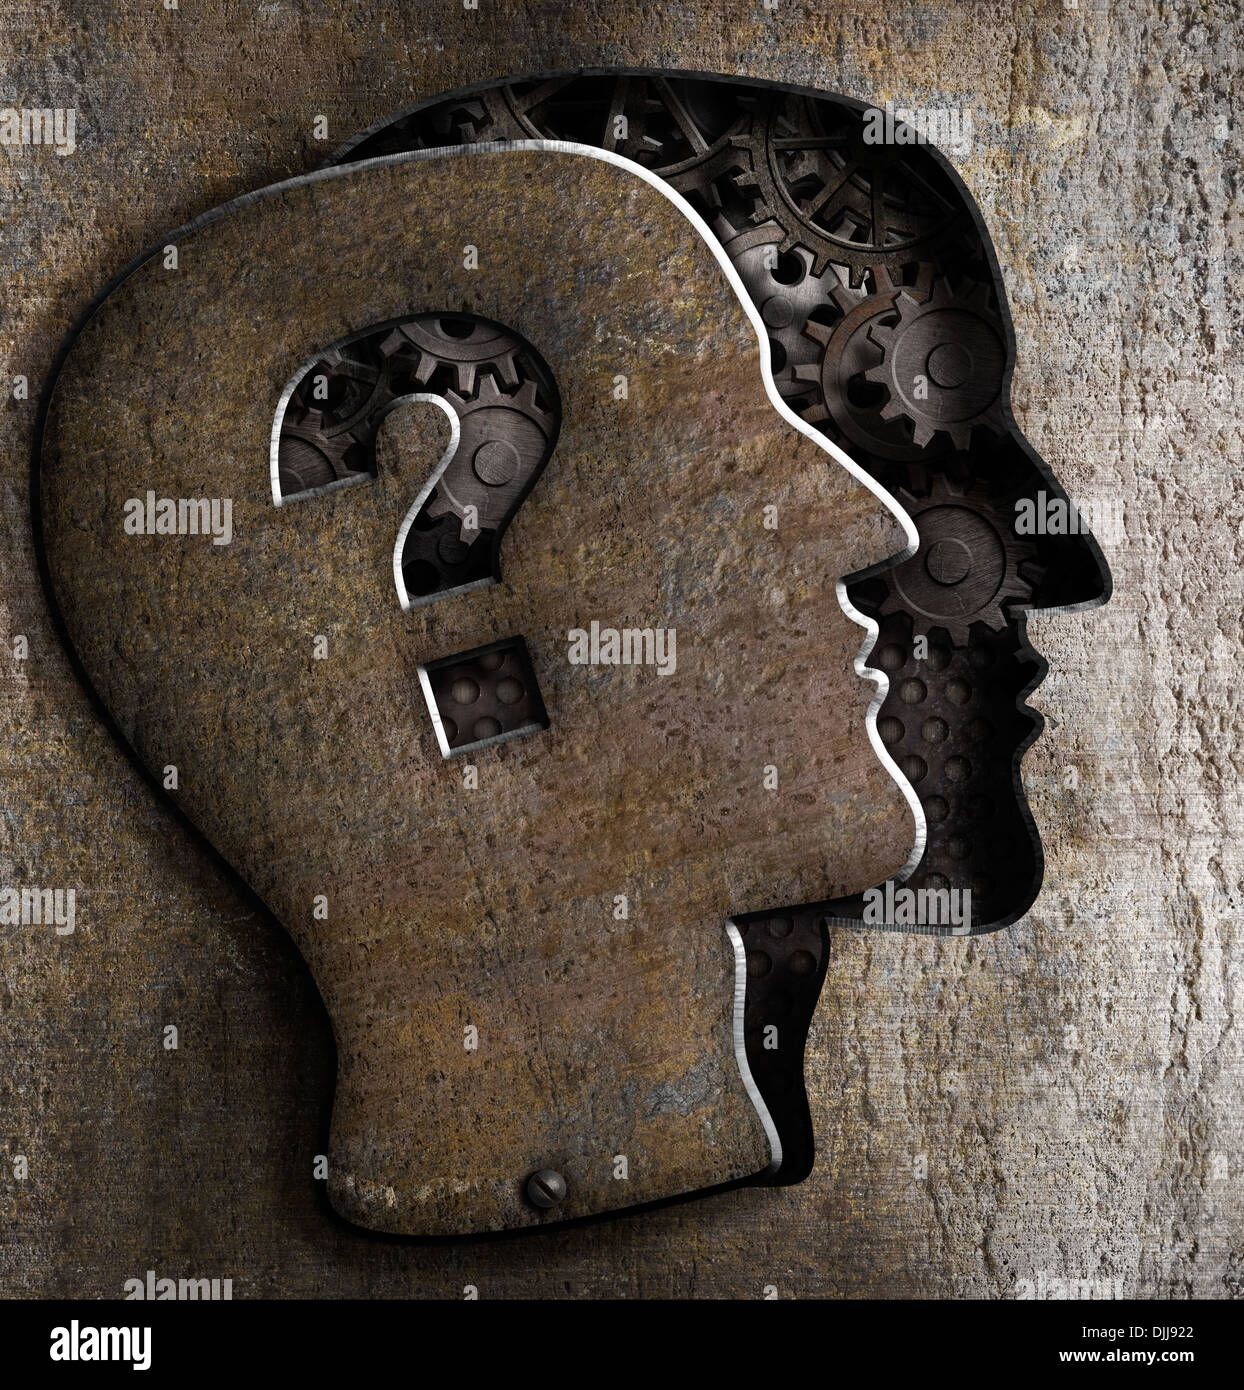 Menschliches Gehirn öffnen mit Fragezeichen auf Metall-Deckel Stockfoto